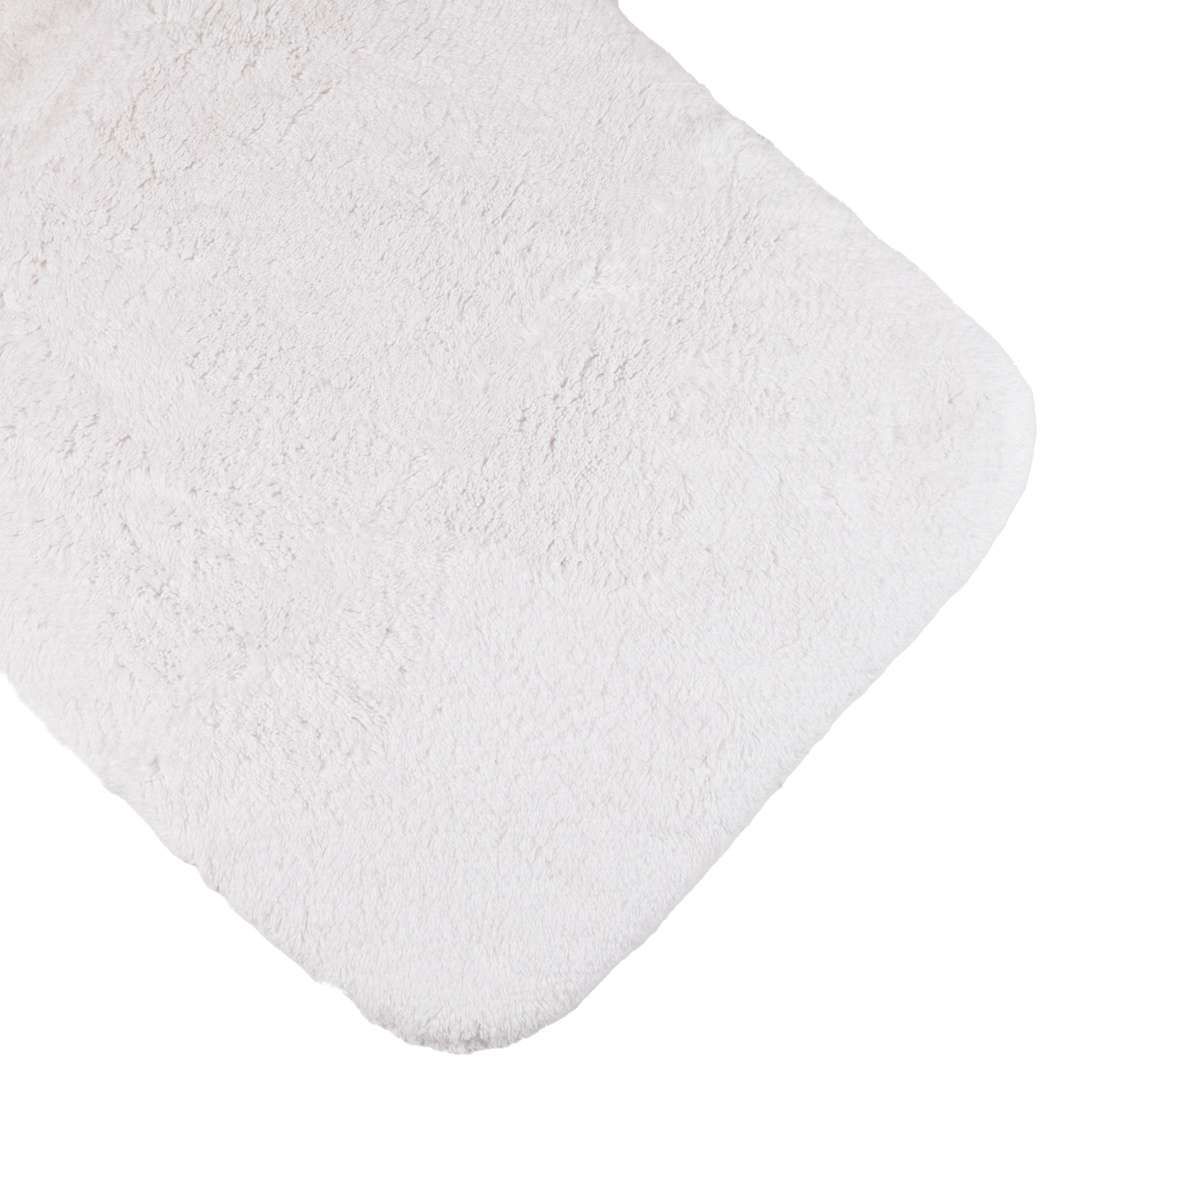 Immagine del prodotto Tappeto Bagno Soffio Bianco 100% Cotone con Antiscivolo - 3 Misure | Cavalieri Spa